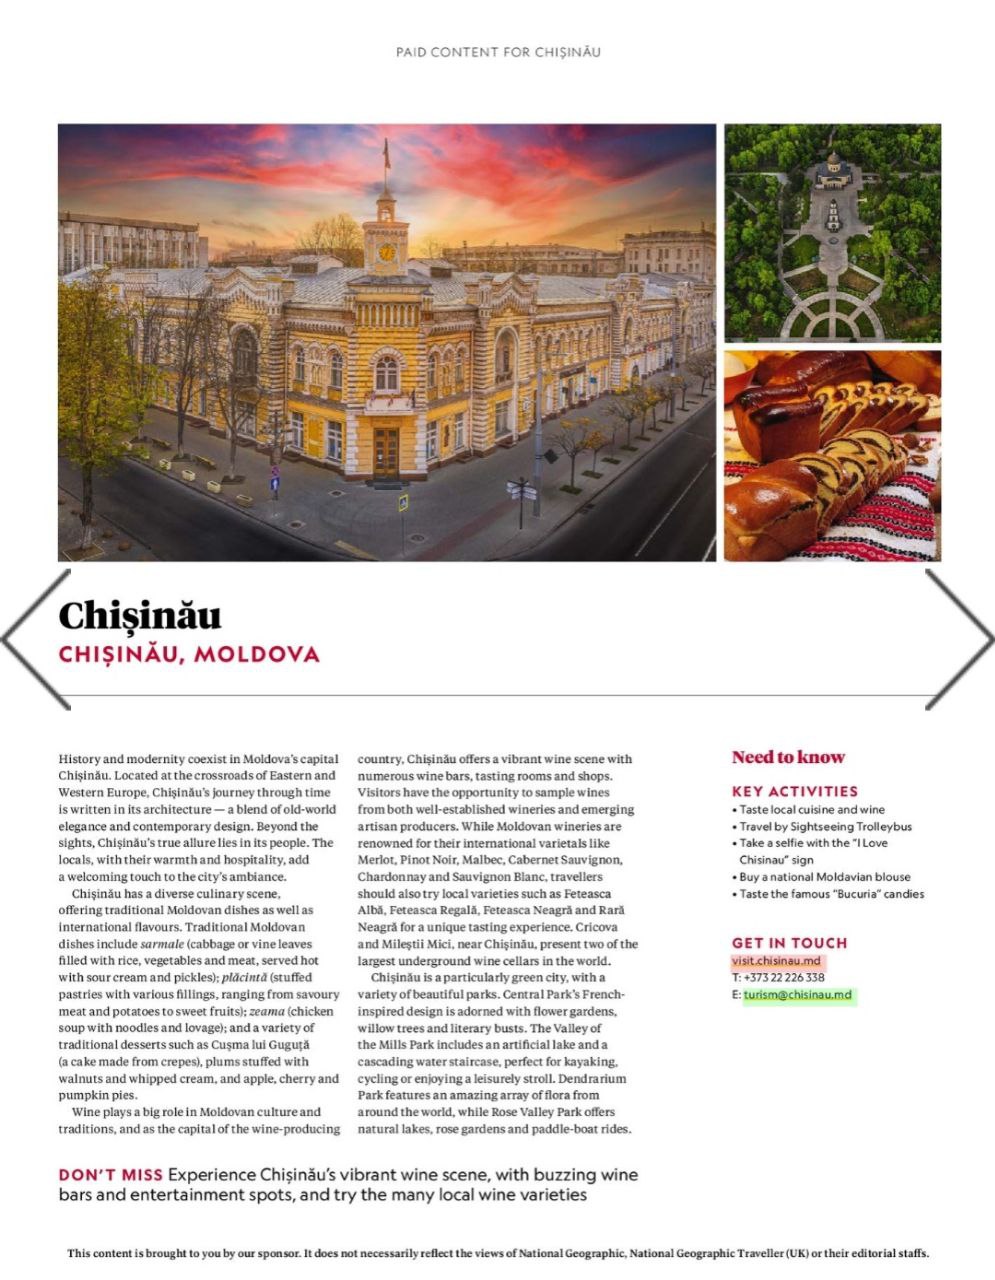 Primăria capitalei anunță cu fast apariția unui articol despre Chișinău în National Geographic. Doar că... materialul a fost plătit